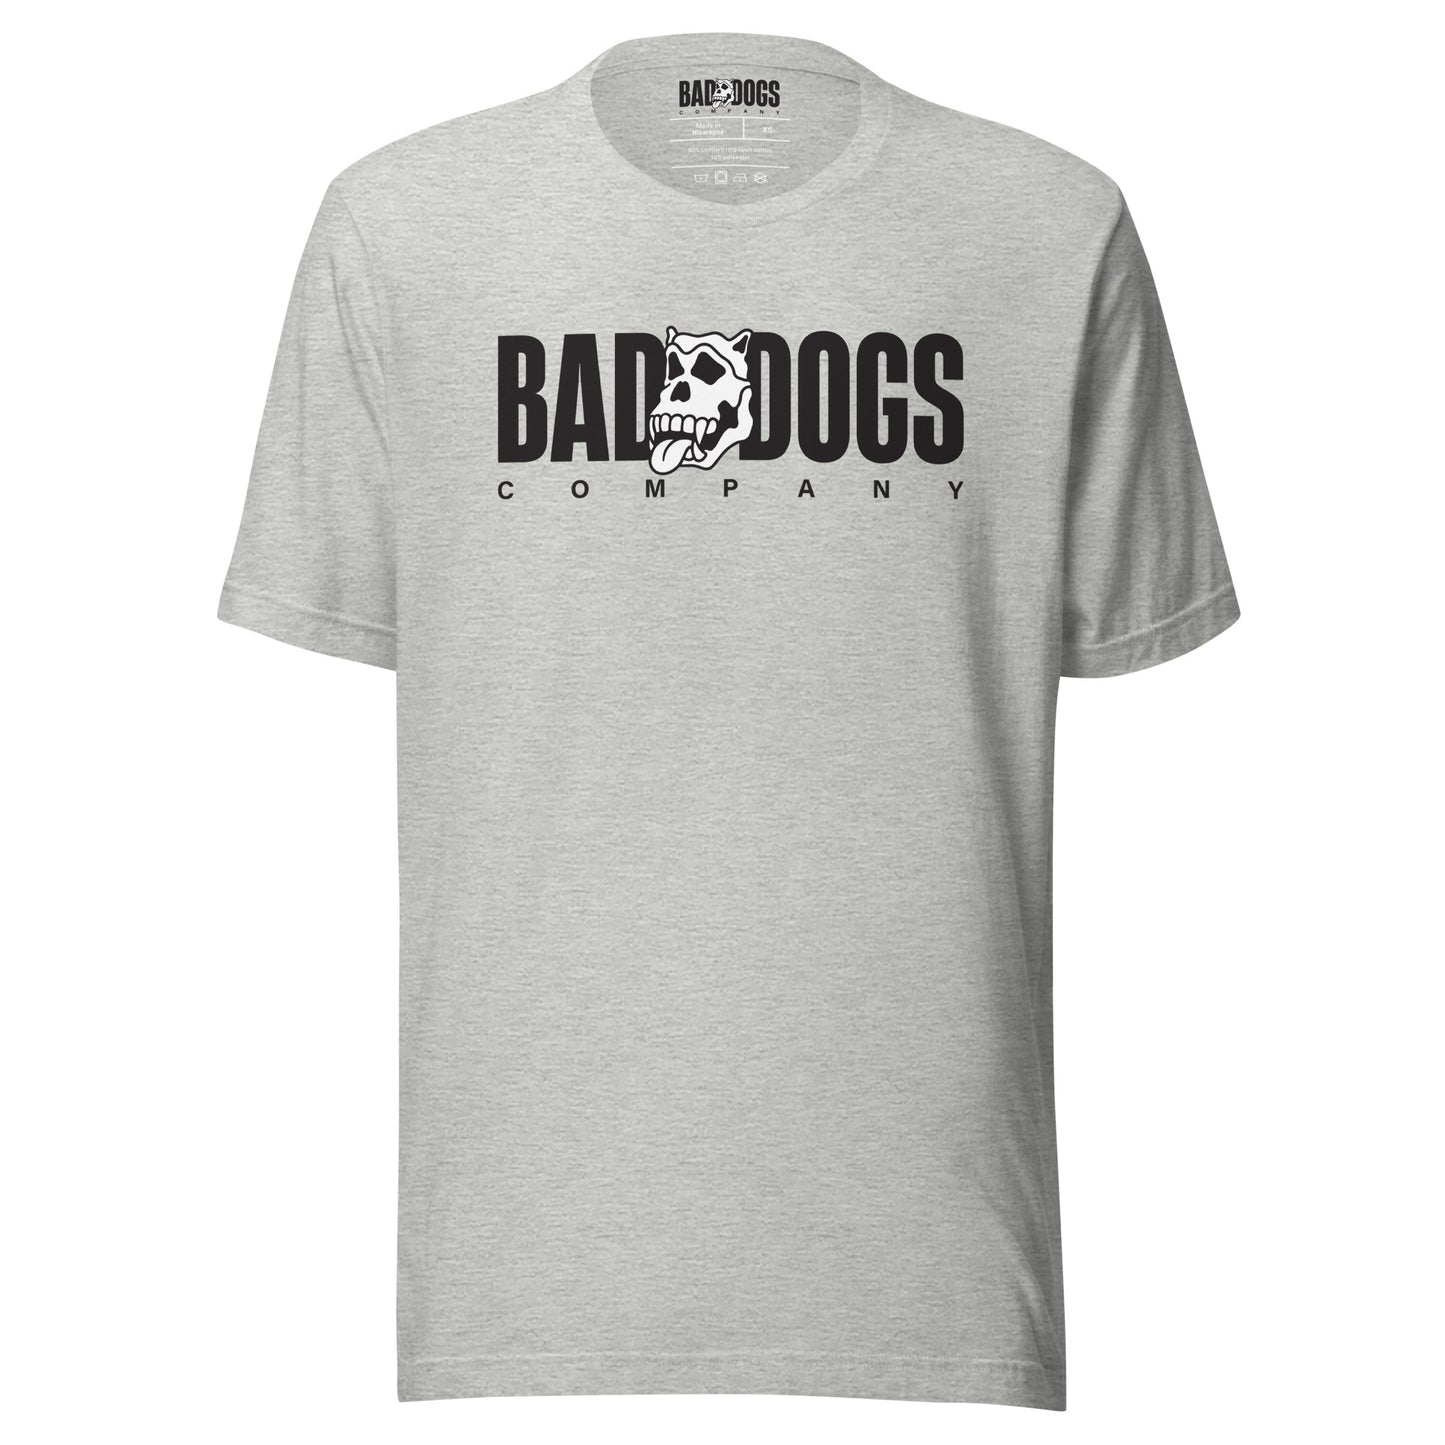 Bad Dogs Basic T-Shirt (Light Grey- Dark logo)